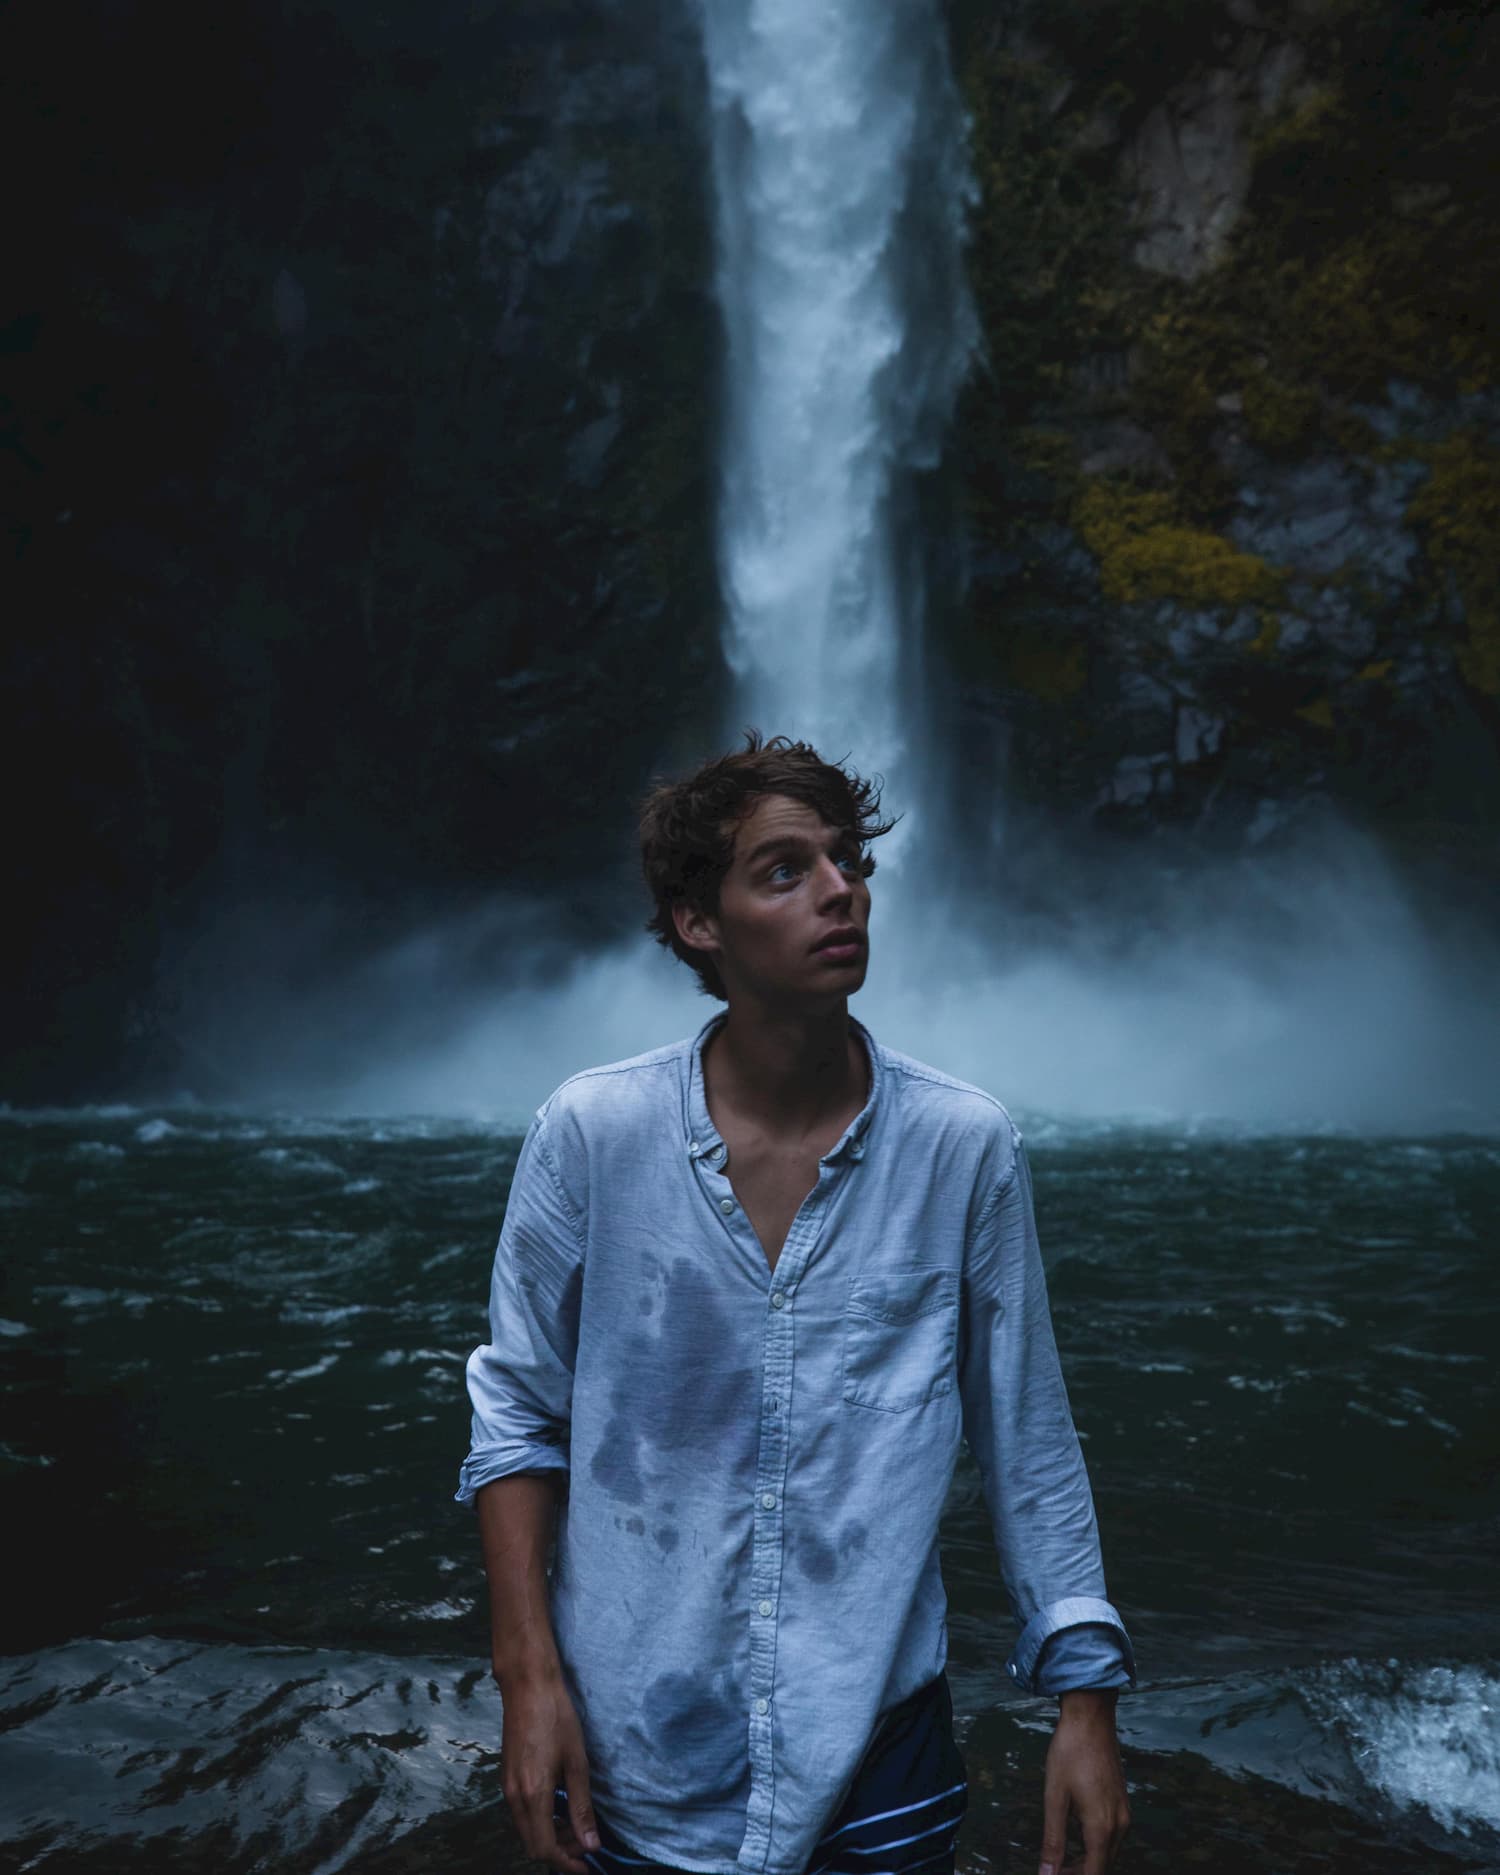 @kayvanhuisseling portrait waterfall